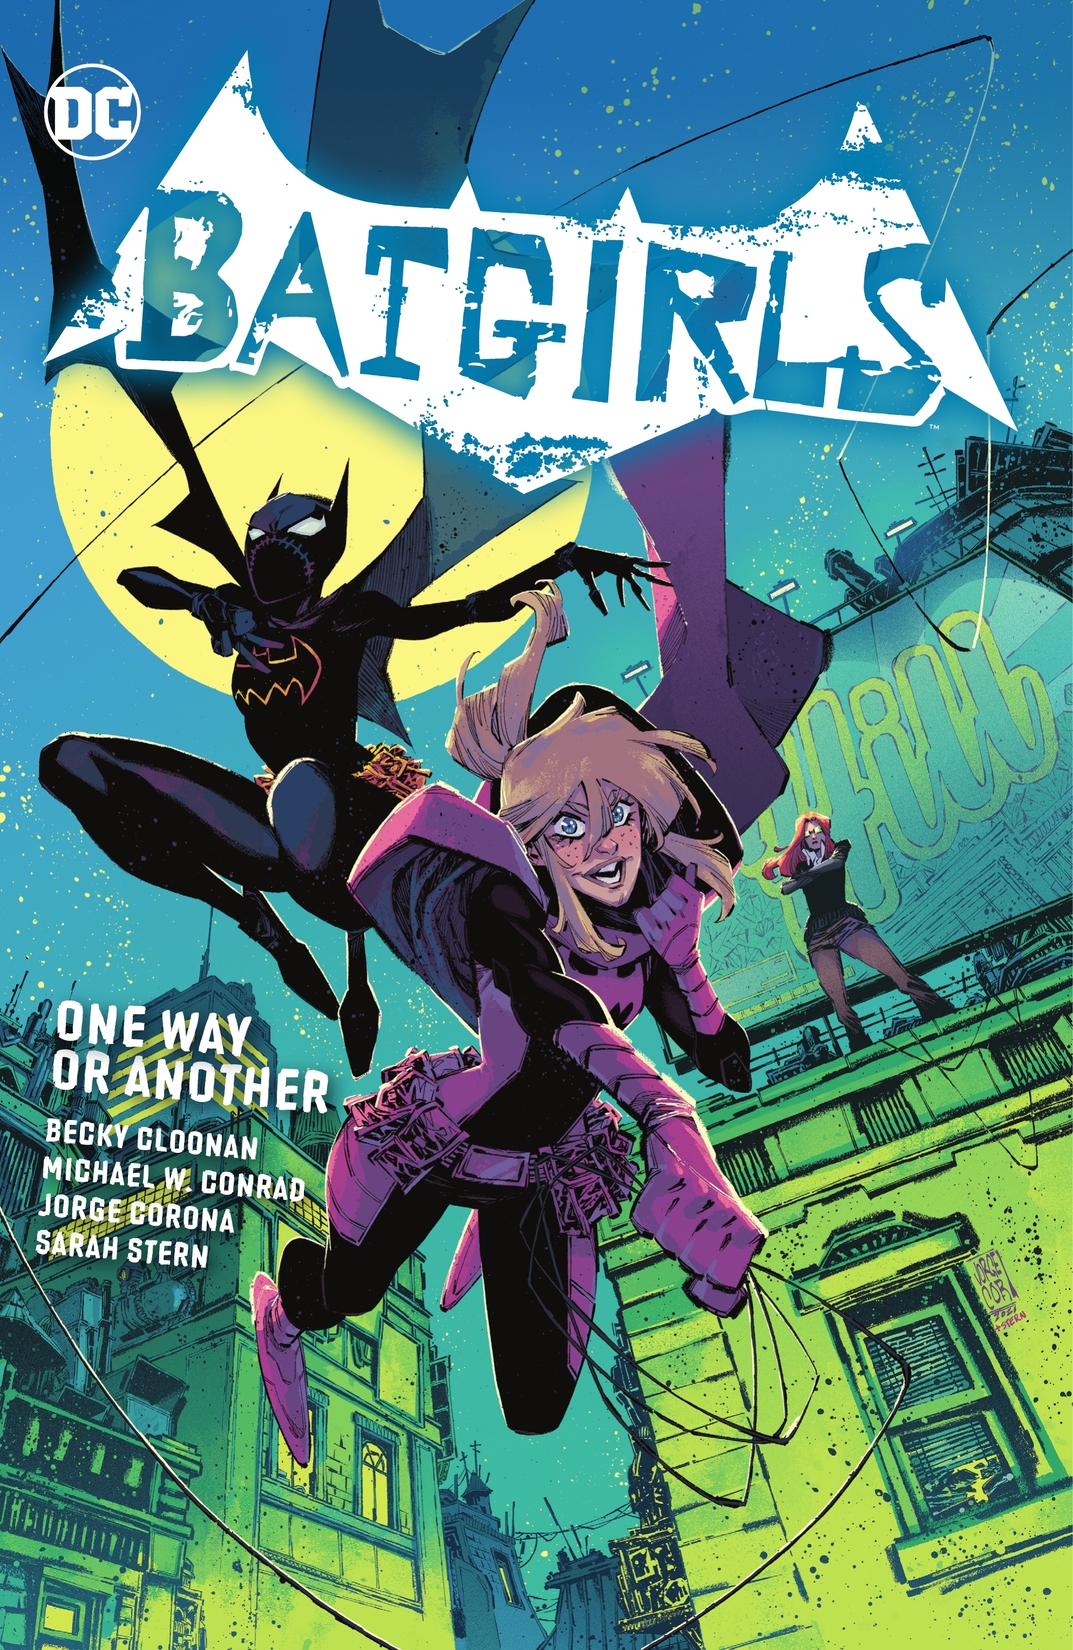 Batgirls Vol. 1 preview images